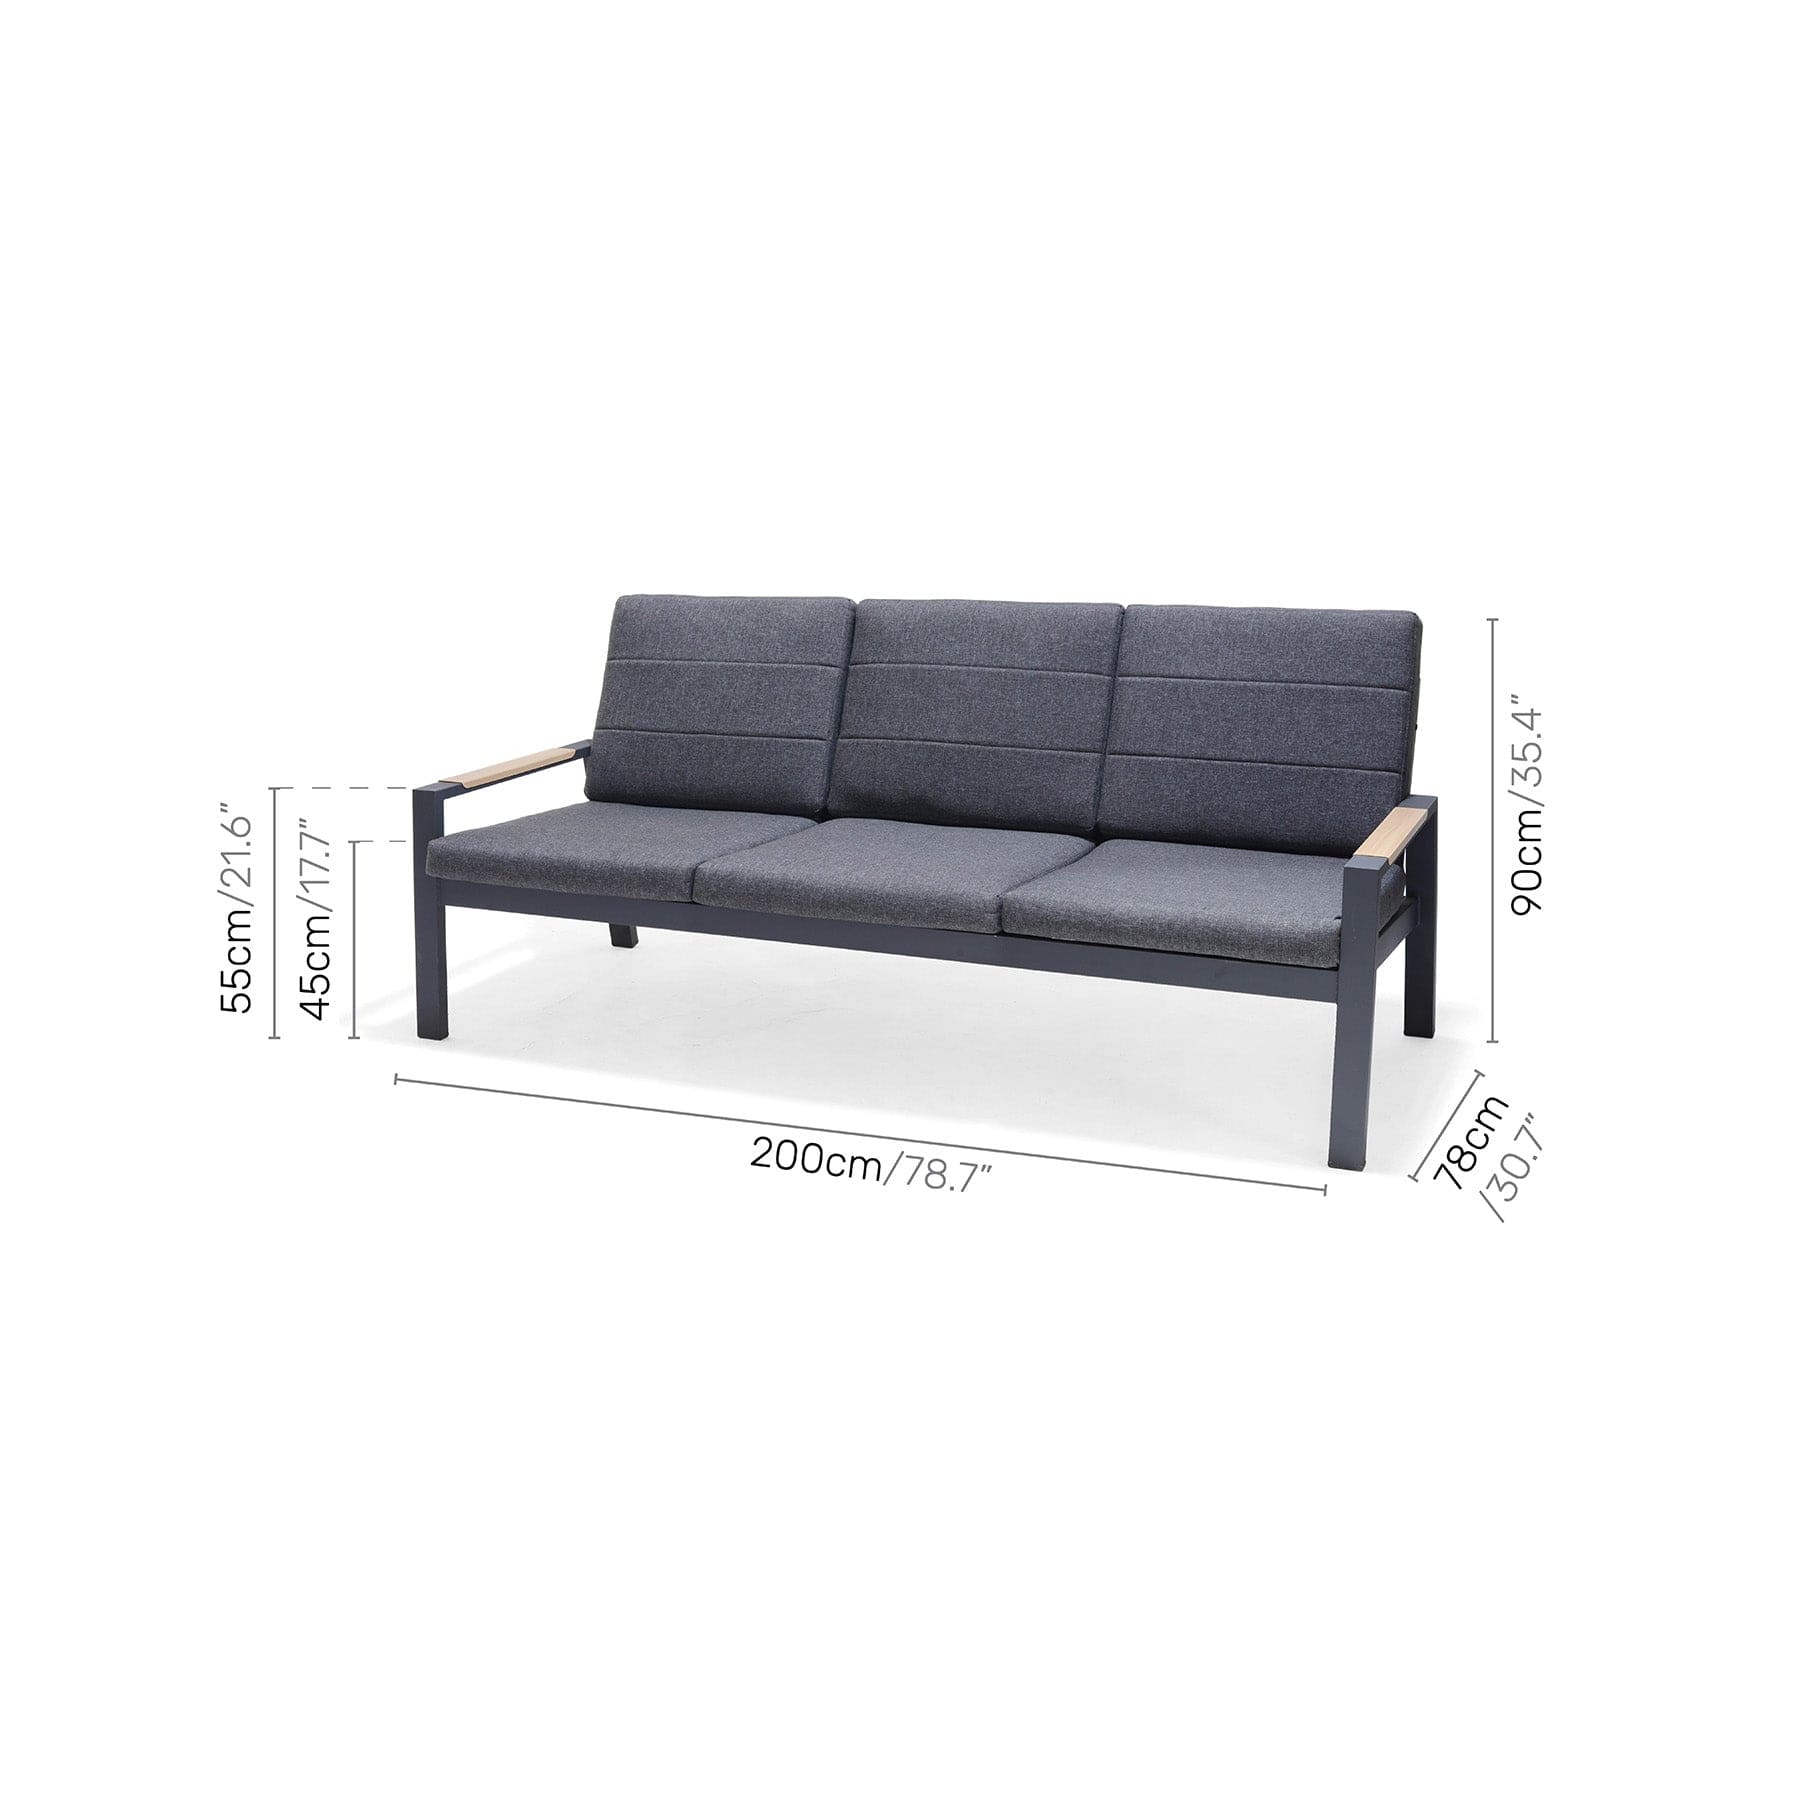 Panama dark sofa set